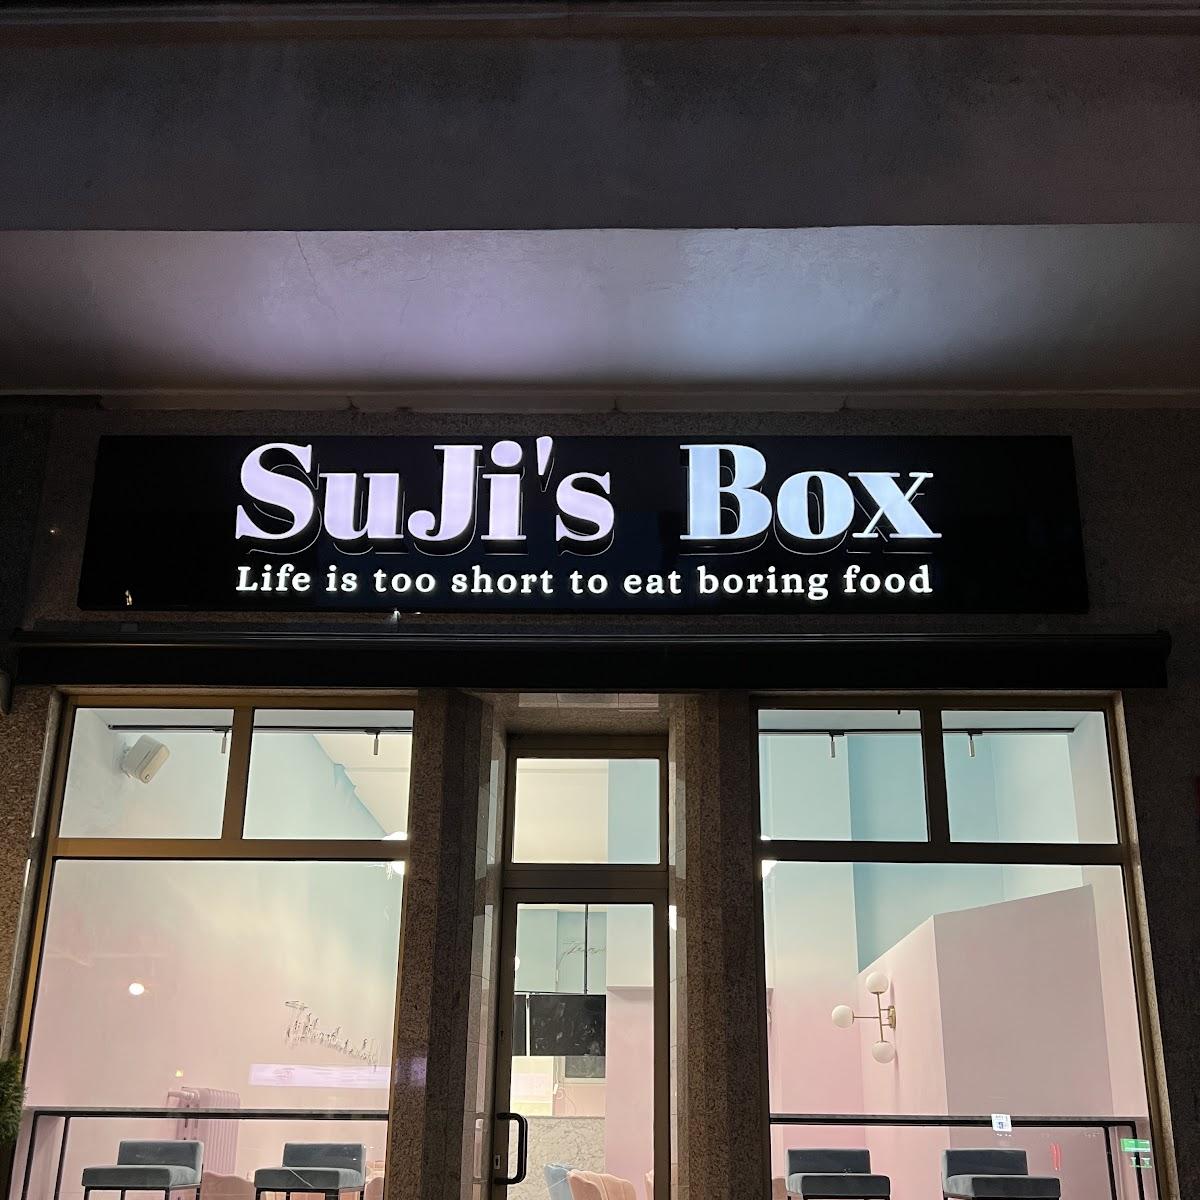 Restaurant "SuJi‘s Box" in Berlin